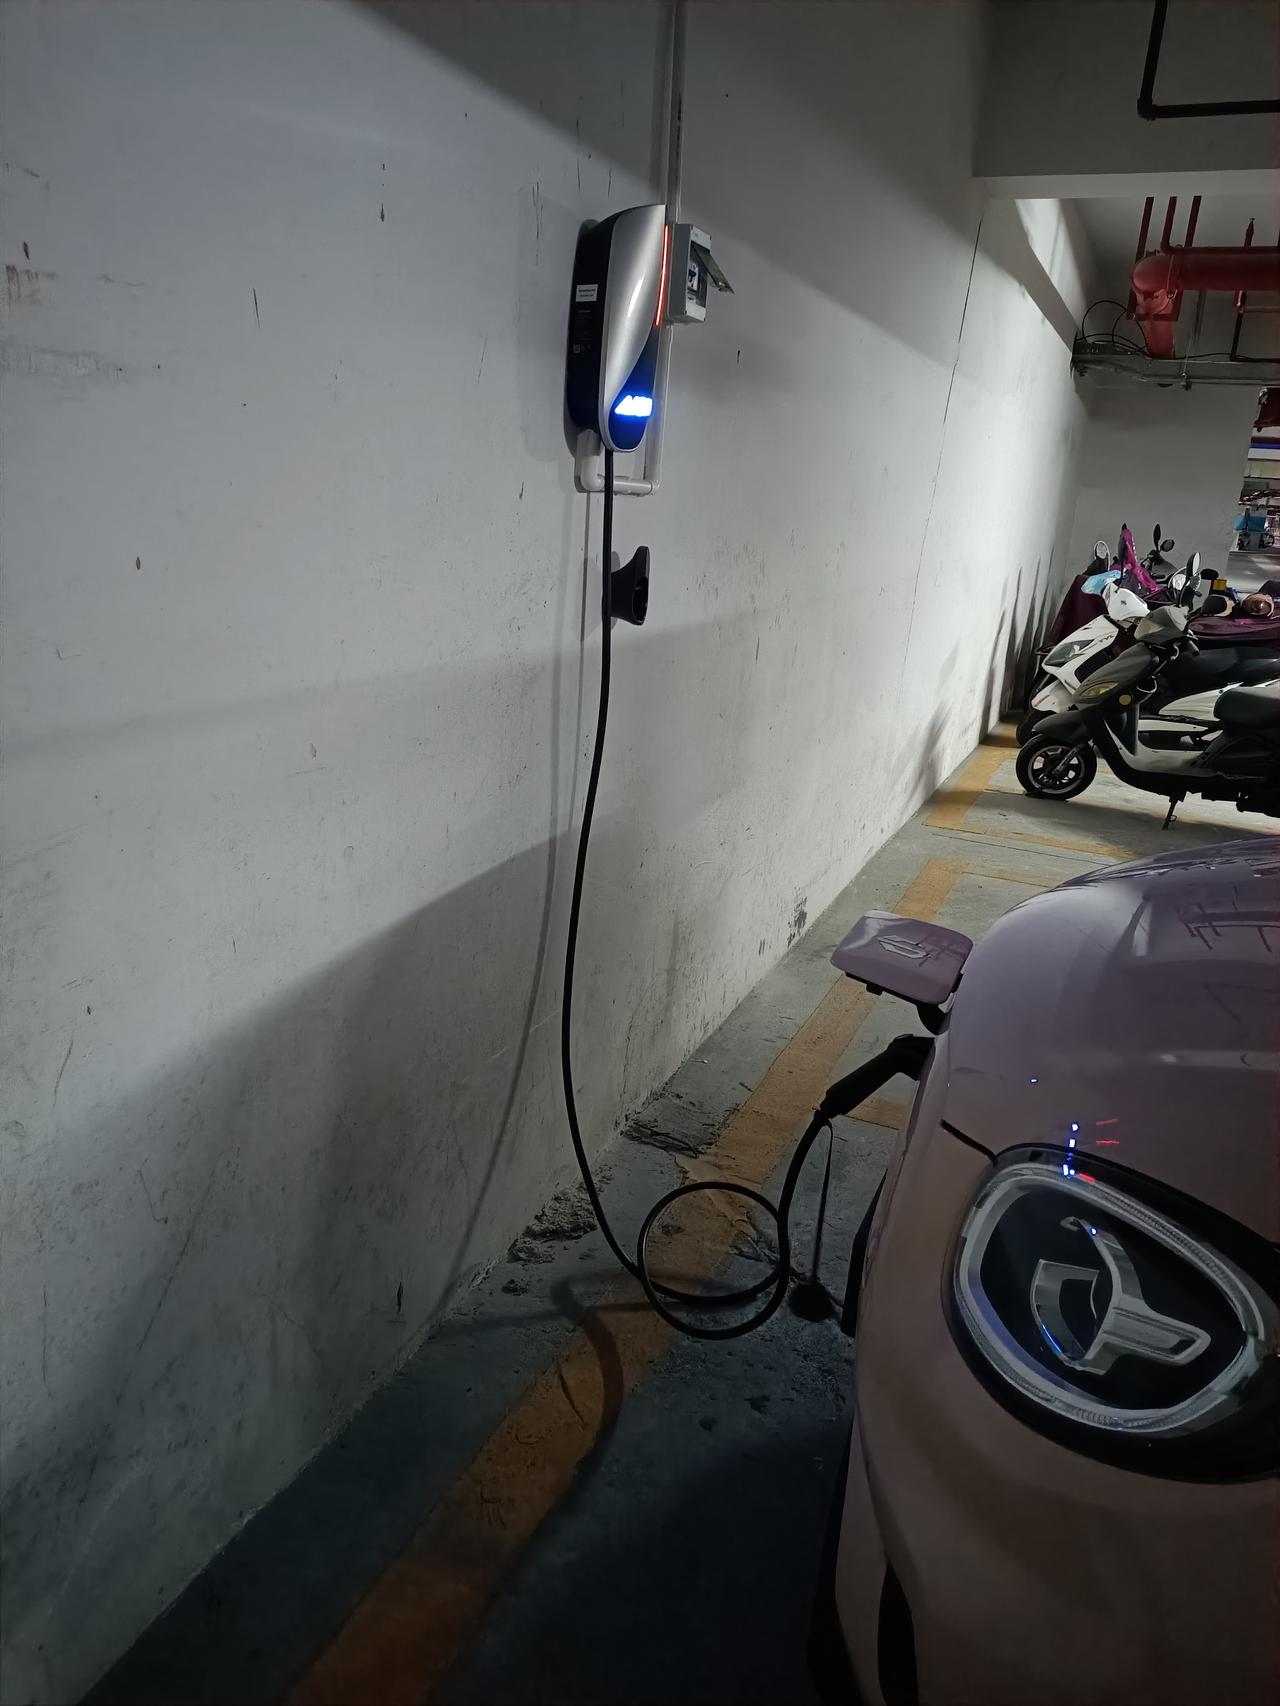 埃安AION Y 的埃安充电桩能给其他品牌汽车充电吗？的零跑T03充不了，问厂家客服说国标都能充，问充电桩生产厂家